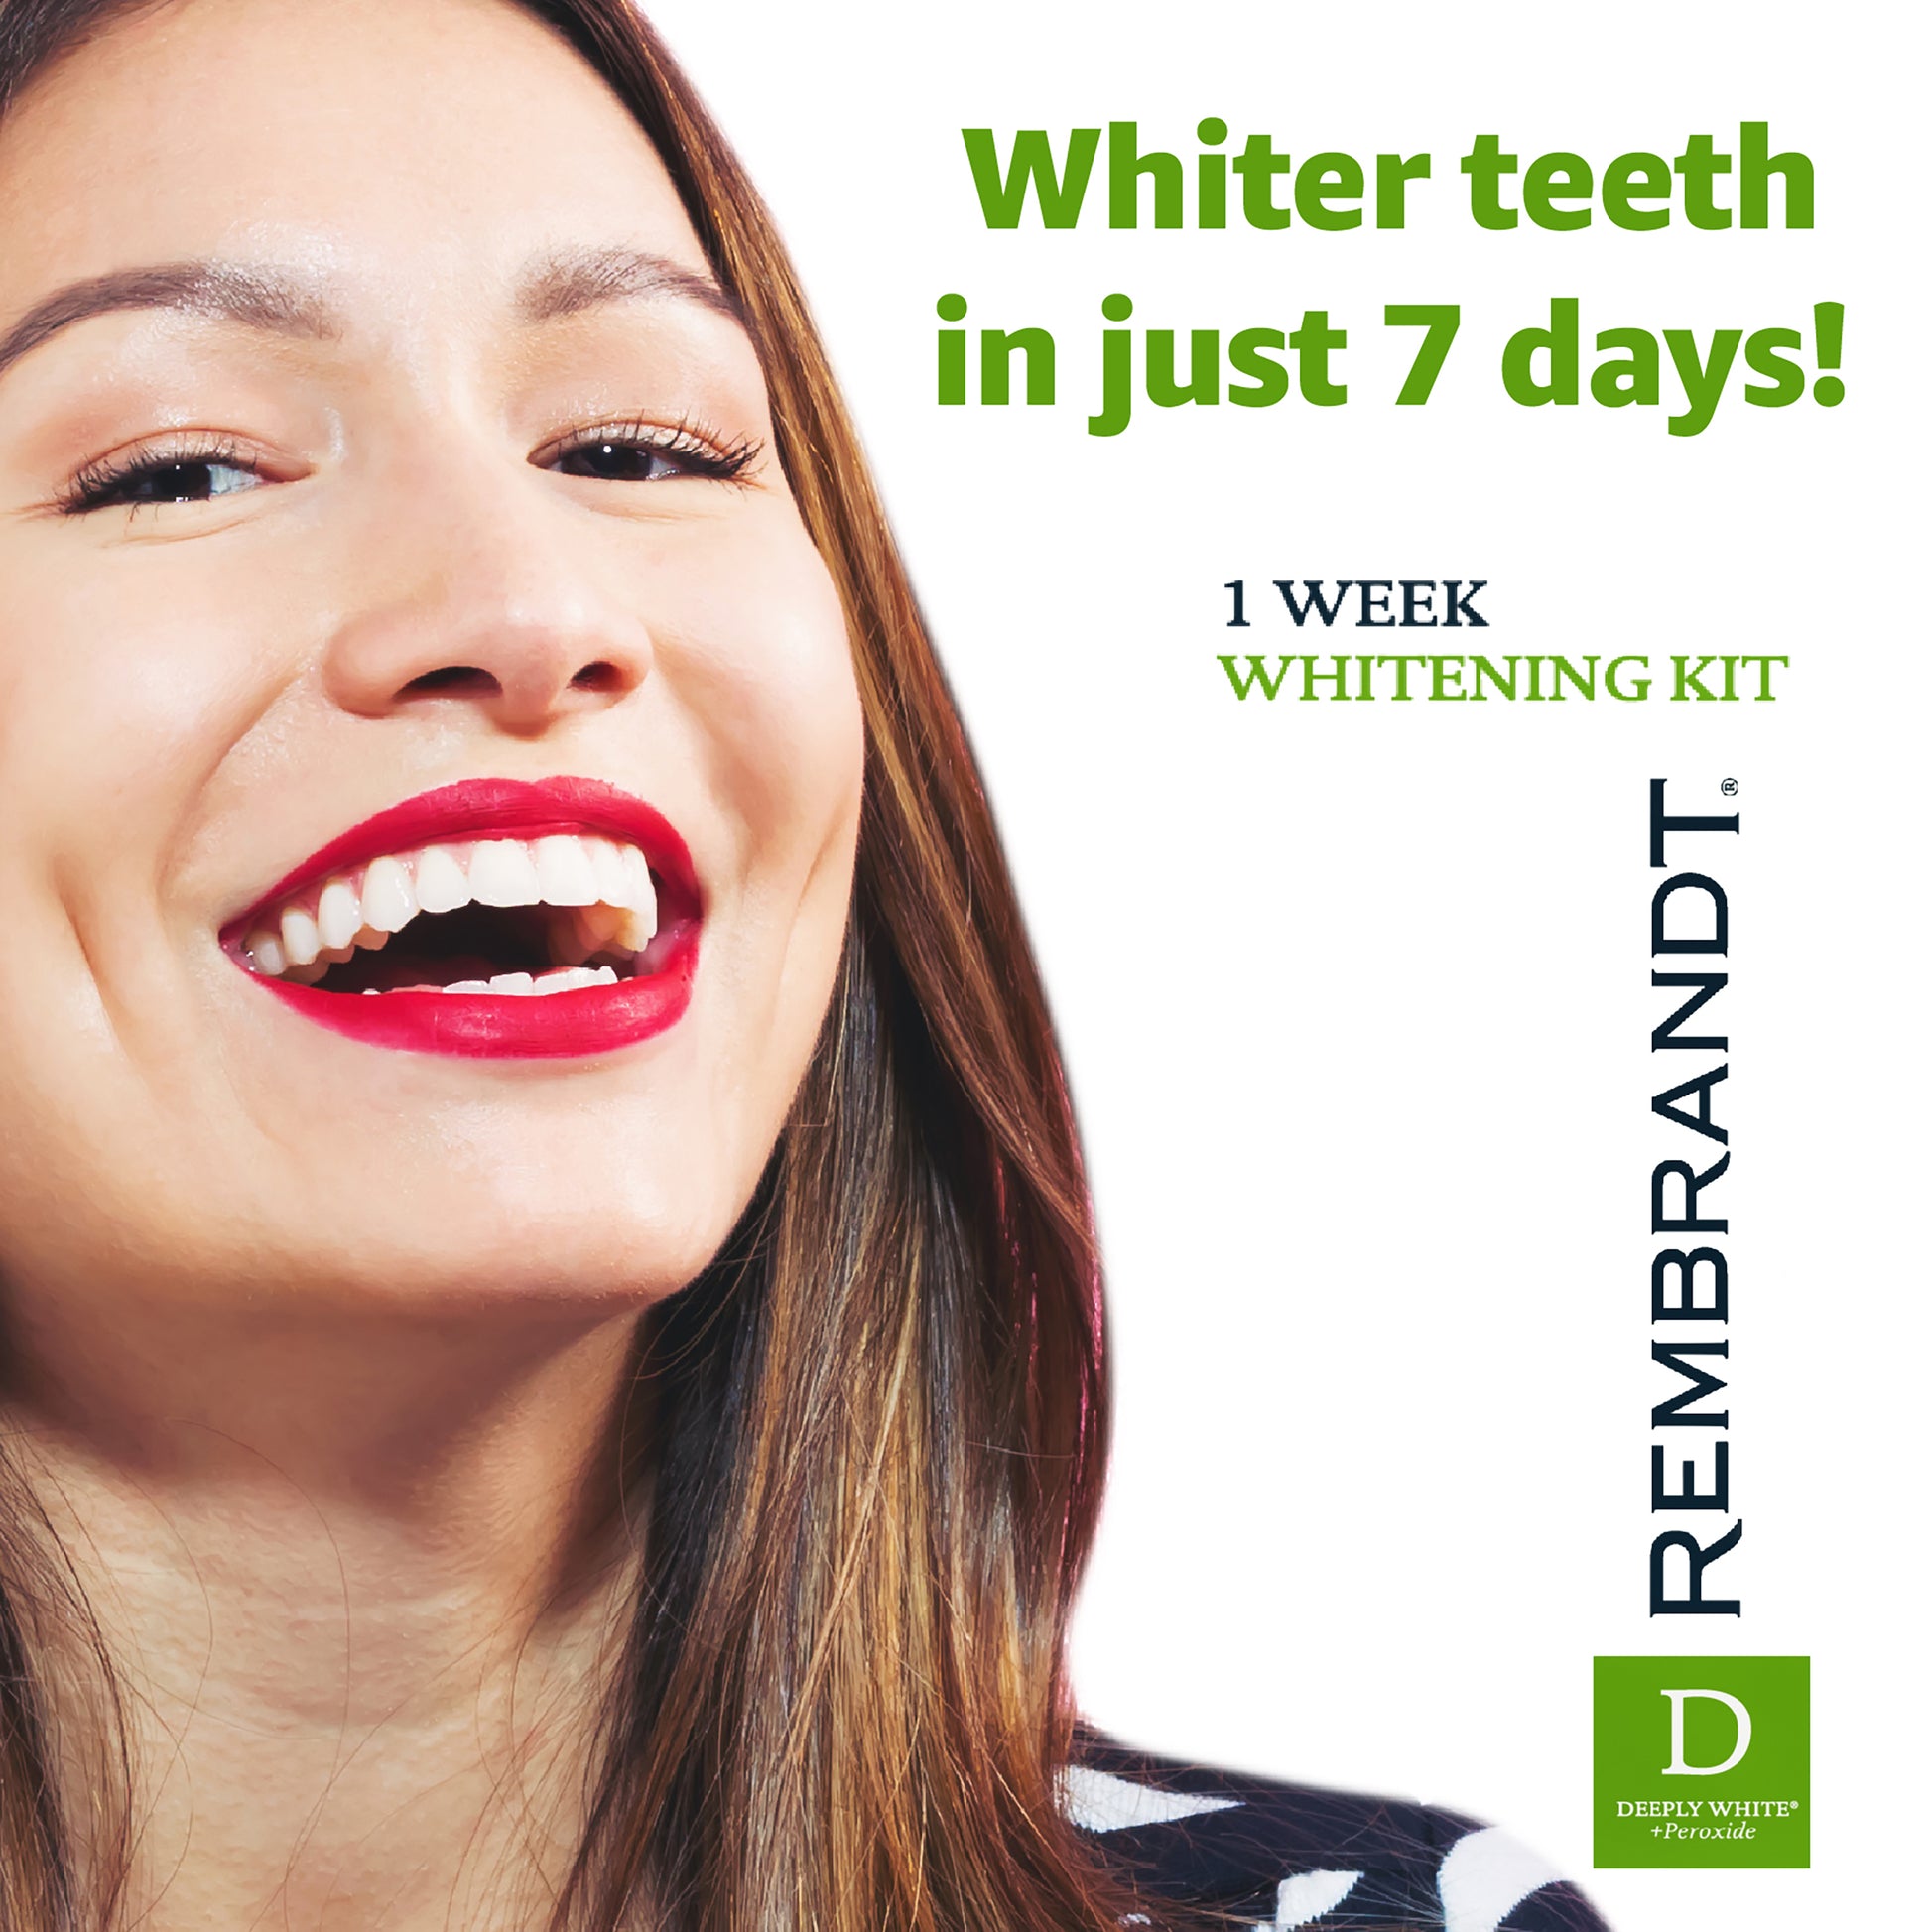 Whiter teeth in just 7 days! 1 week whitening kit